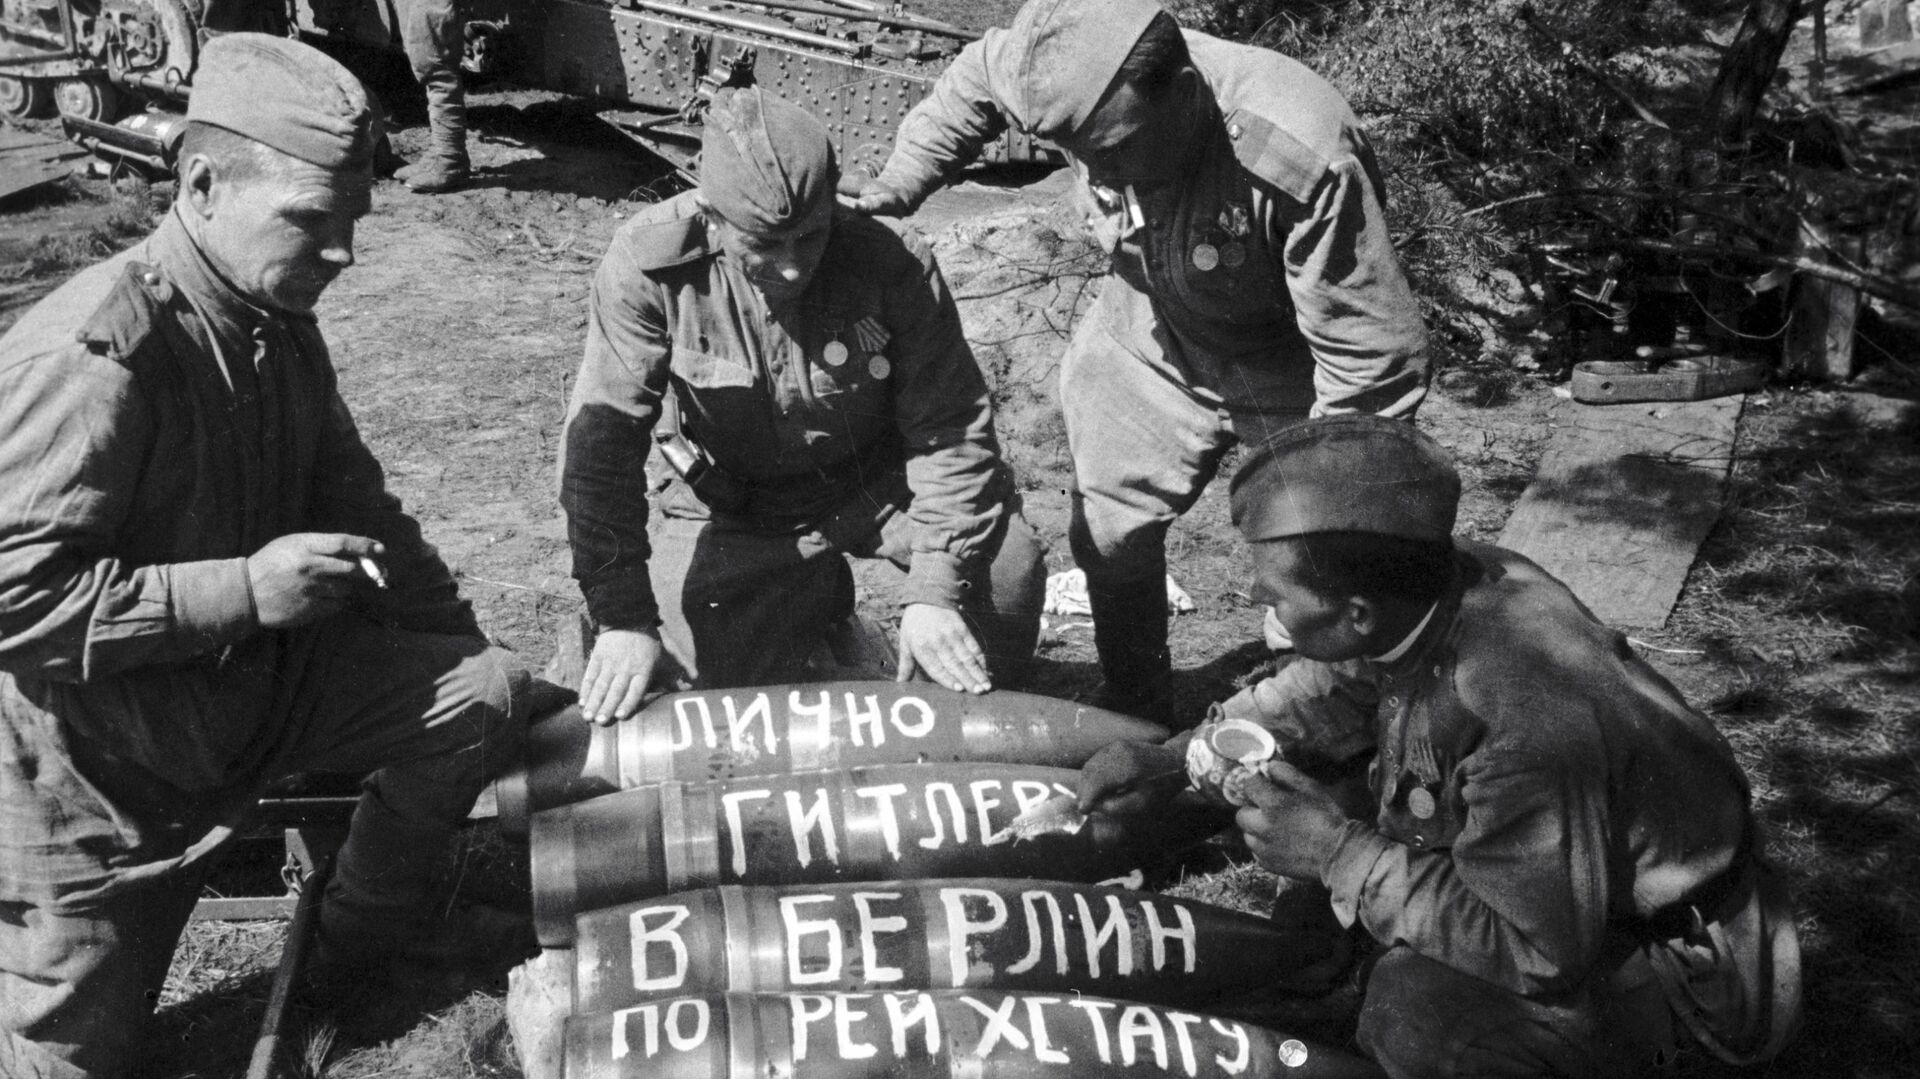 Советские солдаты пишут на снарядах послания: Лично Гитлеру, В Берлин, По Рейхстагу. - Sputnik Абхазия, 1920, 08.08.2021